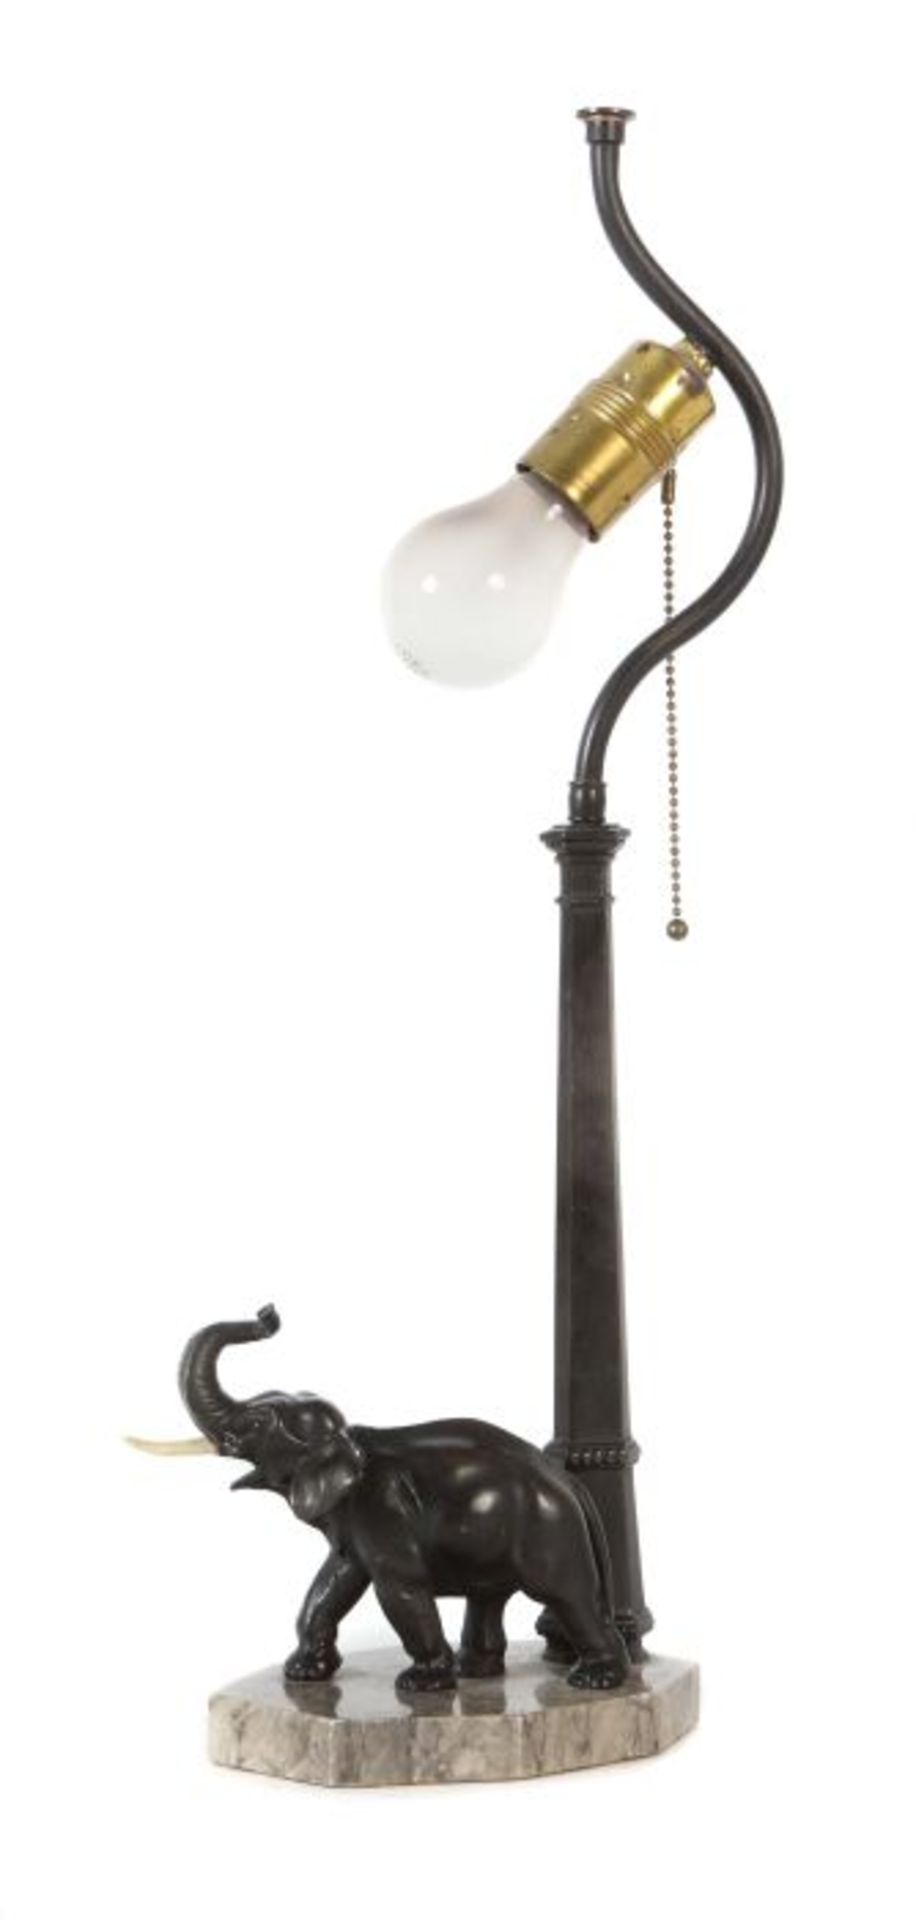 Tischlampe 1. Drittel 20. Jh., Metallguß bronziert, stehender vollplastischer Elefant neben